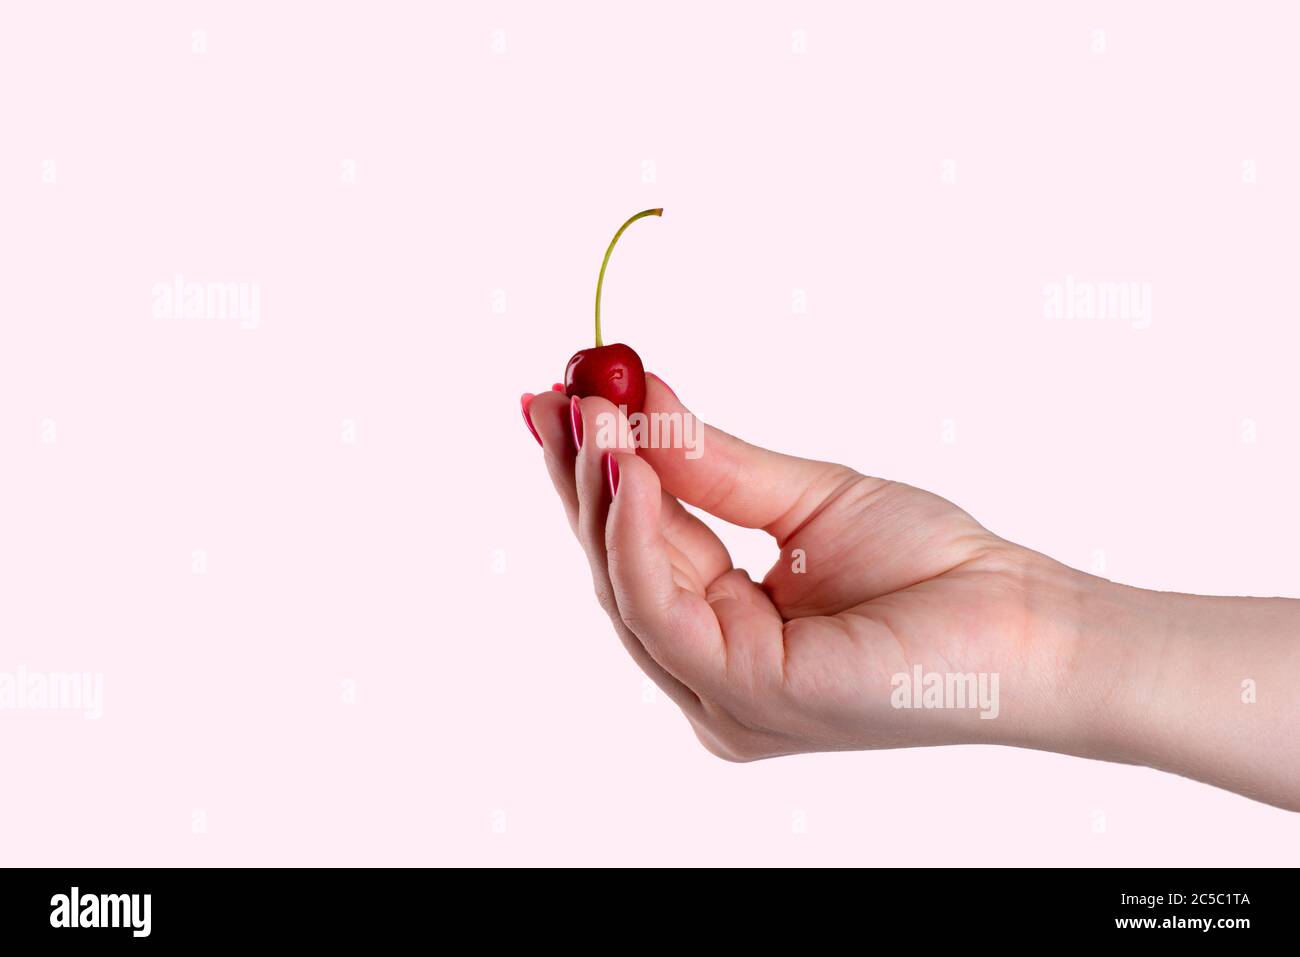 Schöne weibliche Hand hält eine Kirsche Beere auf einem rosa Hintergrund. Ein Tropfen Wasser auf einer Kirsche. Stockfoto